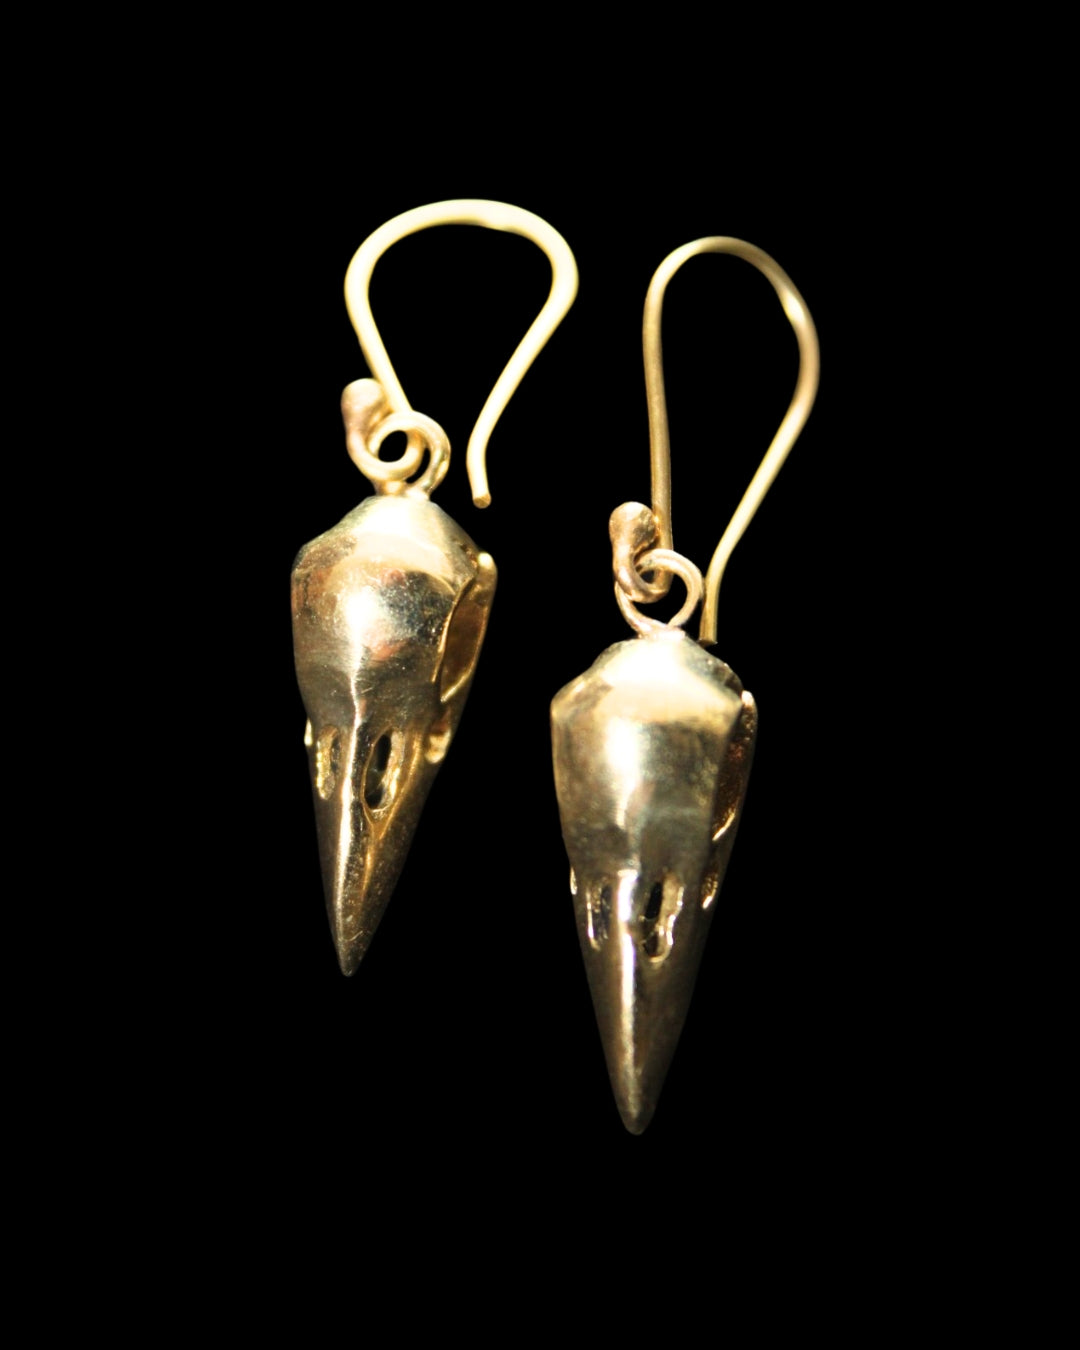 Raven Skull Earrings- Small Gold-Toned